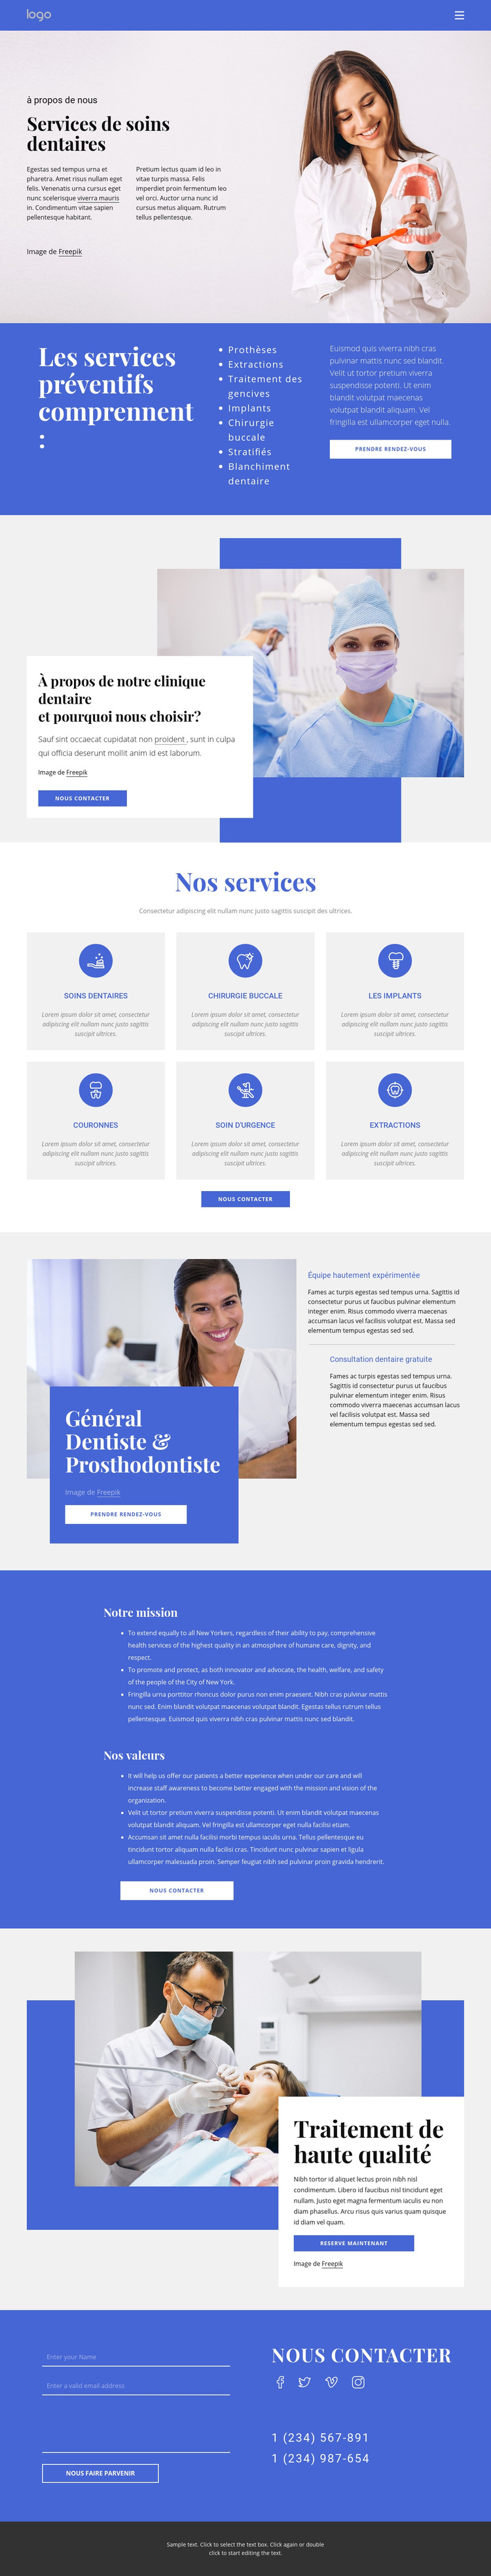 Dentiste et prosthodontie Thème WordPress